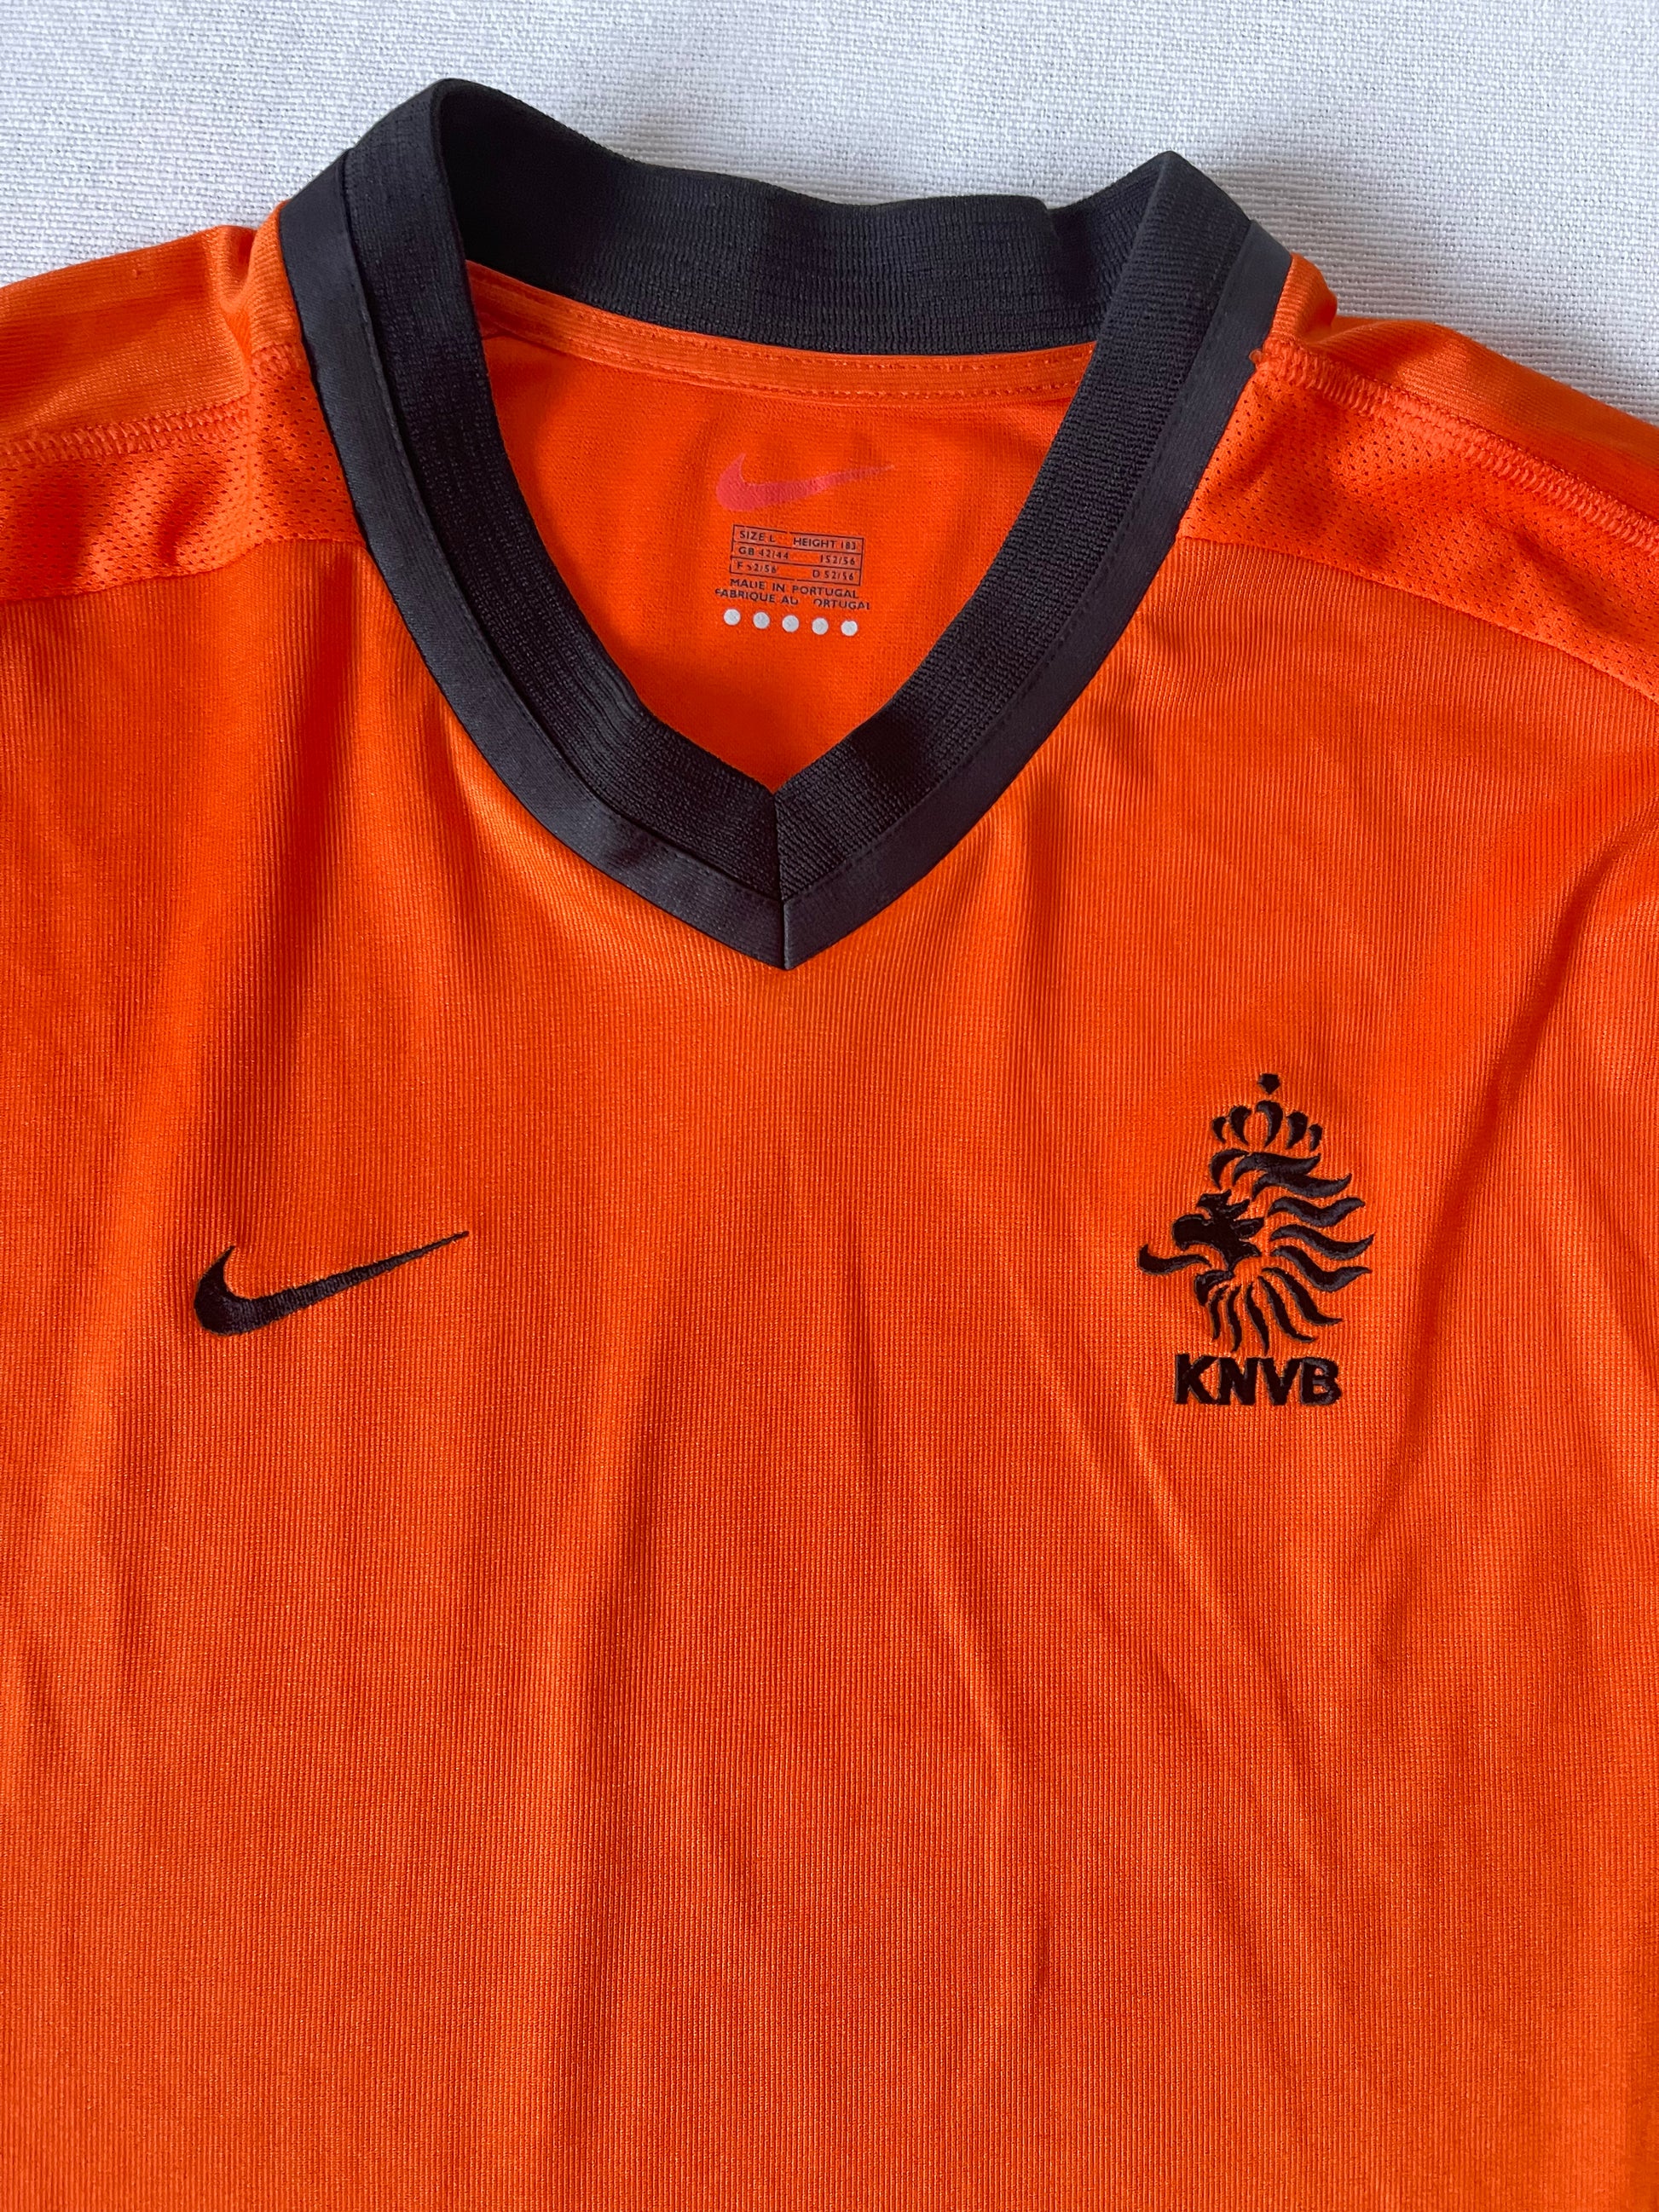 Vintage Holland Netherlands Nike 2000-2001 Home Football Shirt Size L Orange